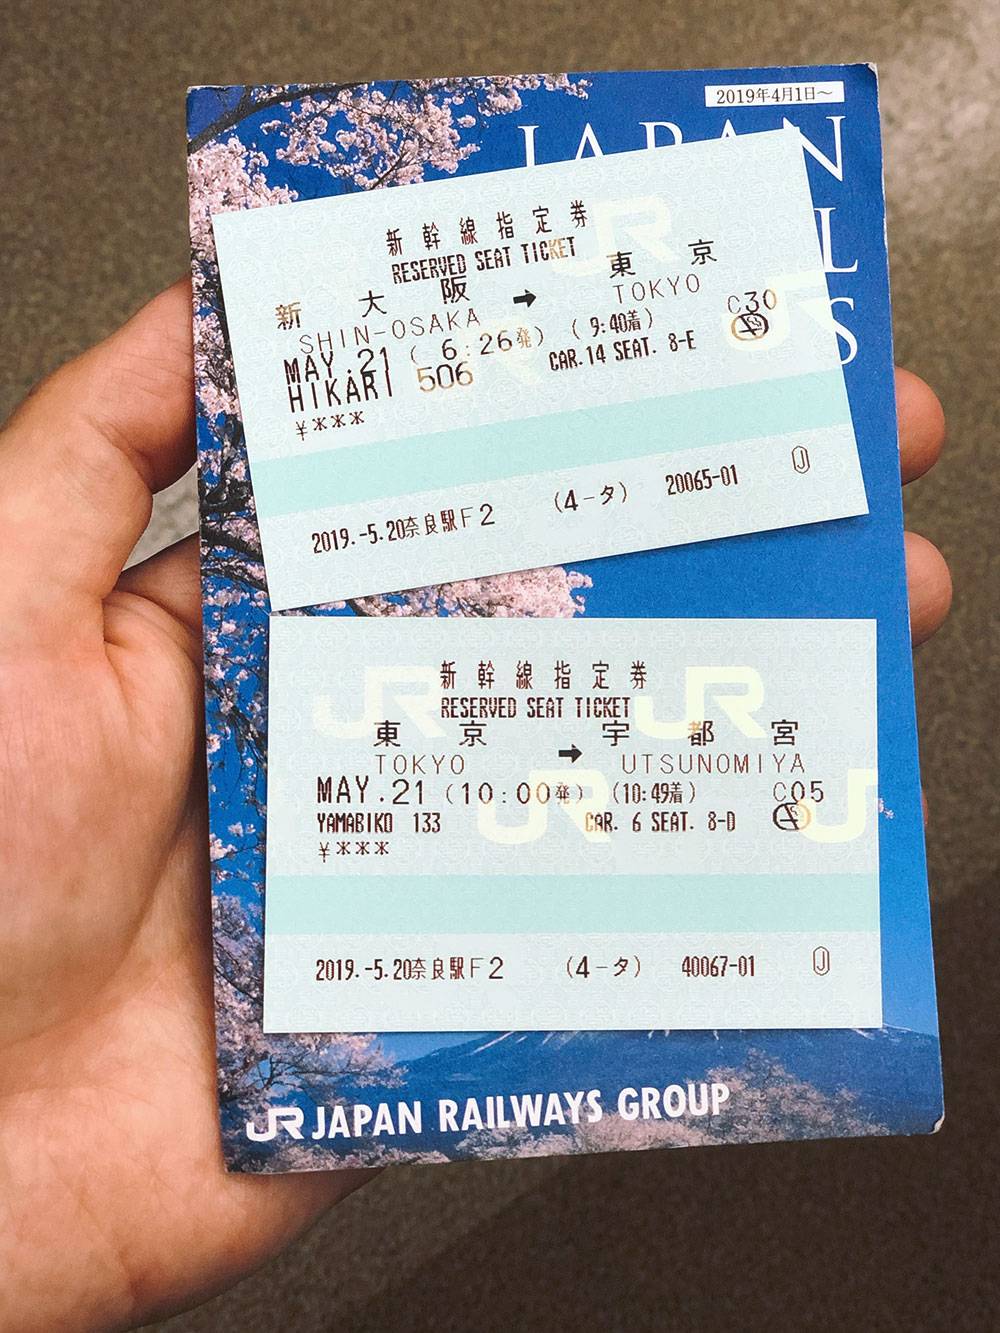 Билеты на два синкансена от станции Син-Осака до станции Уцуномия с 20-минутной пересадкой в Токио